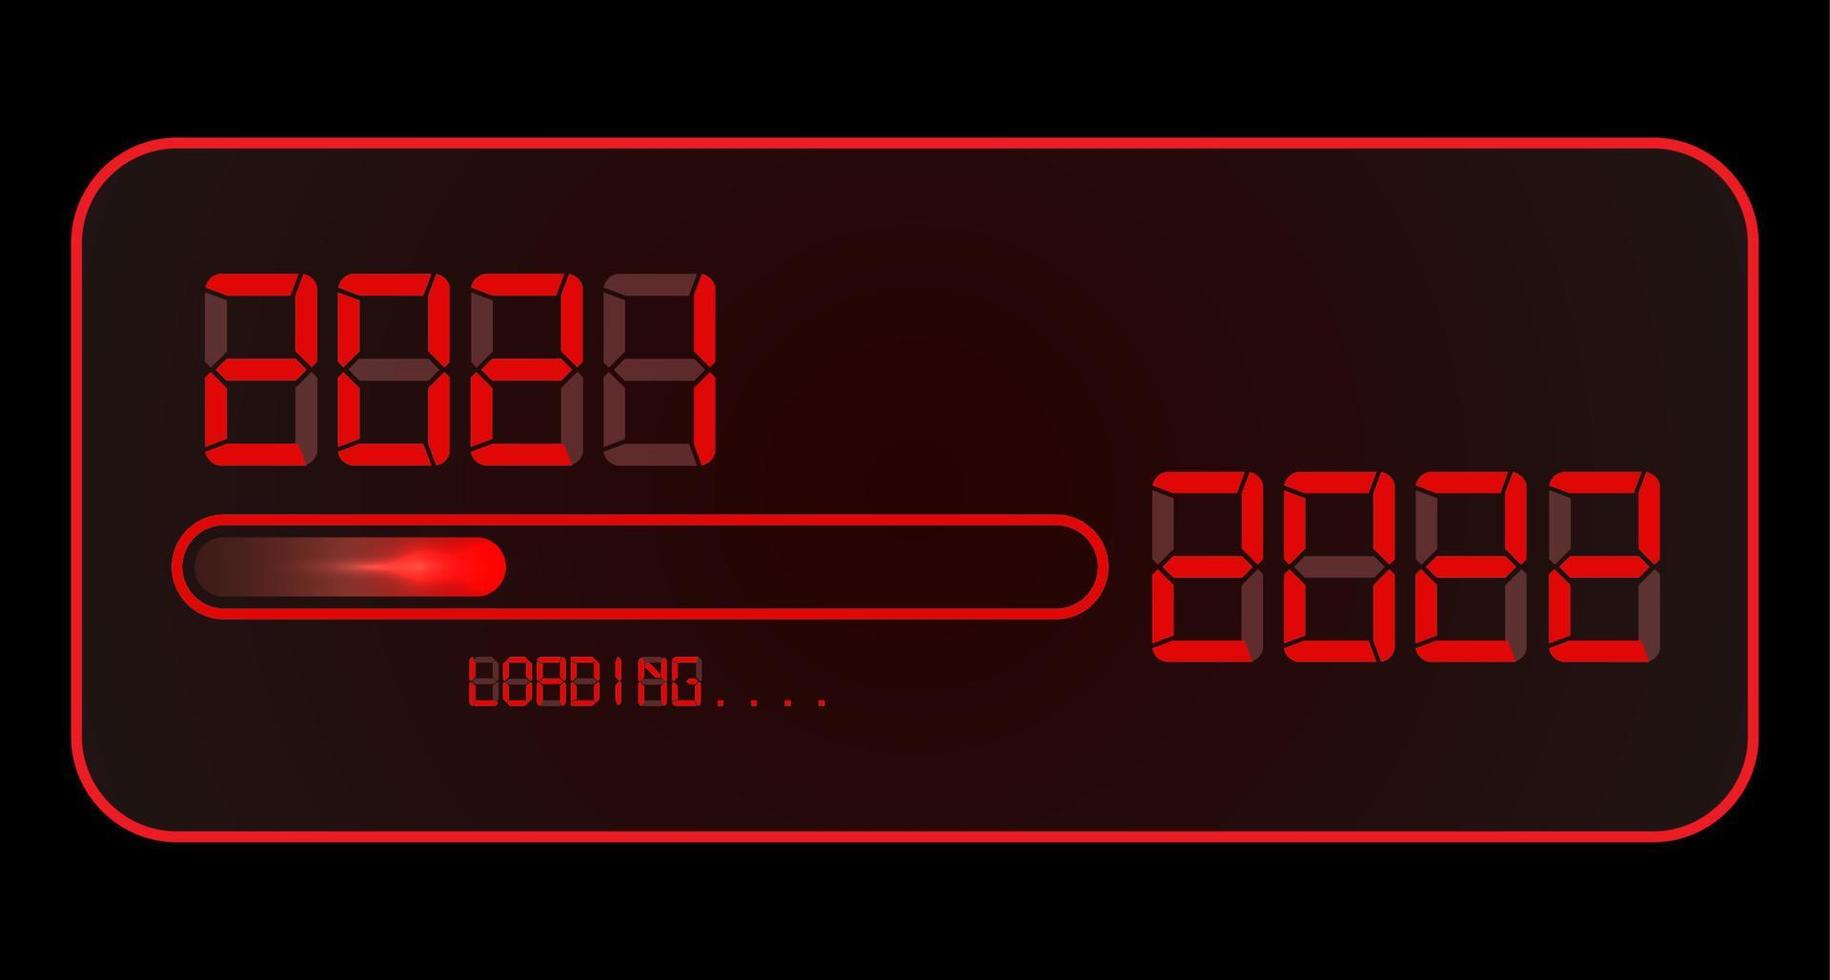 2022 relógio digital feliz ano novo. 2021 carregando até 2022. estilo de tempo digital de néon led vermelho. barra de progresso quase chegando à véspera de ano novo. ilustração vetorial, display vermelho isolado ou fundo preto vetor